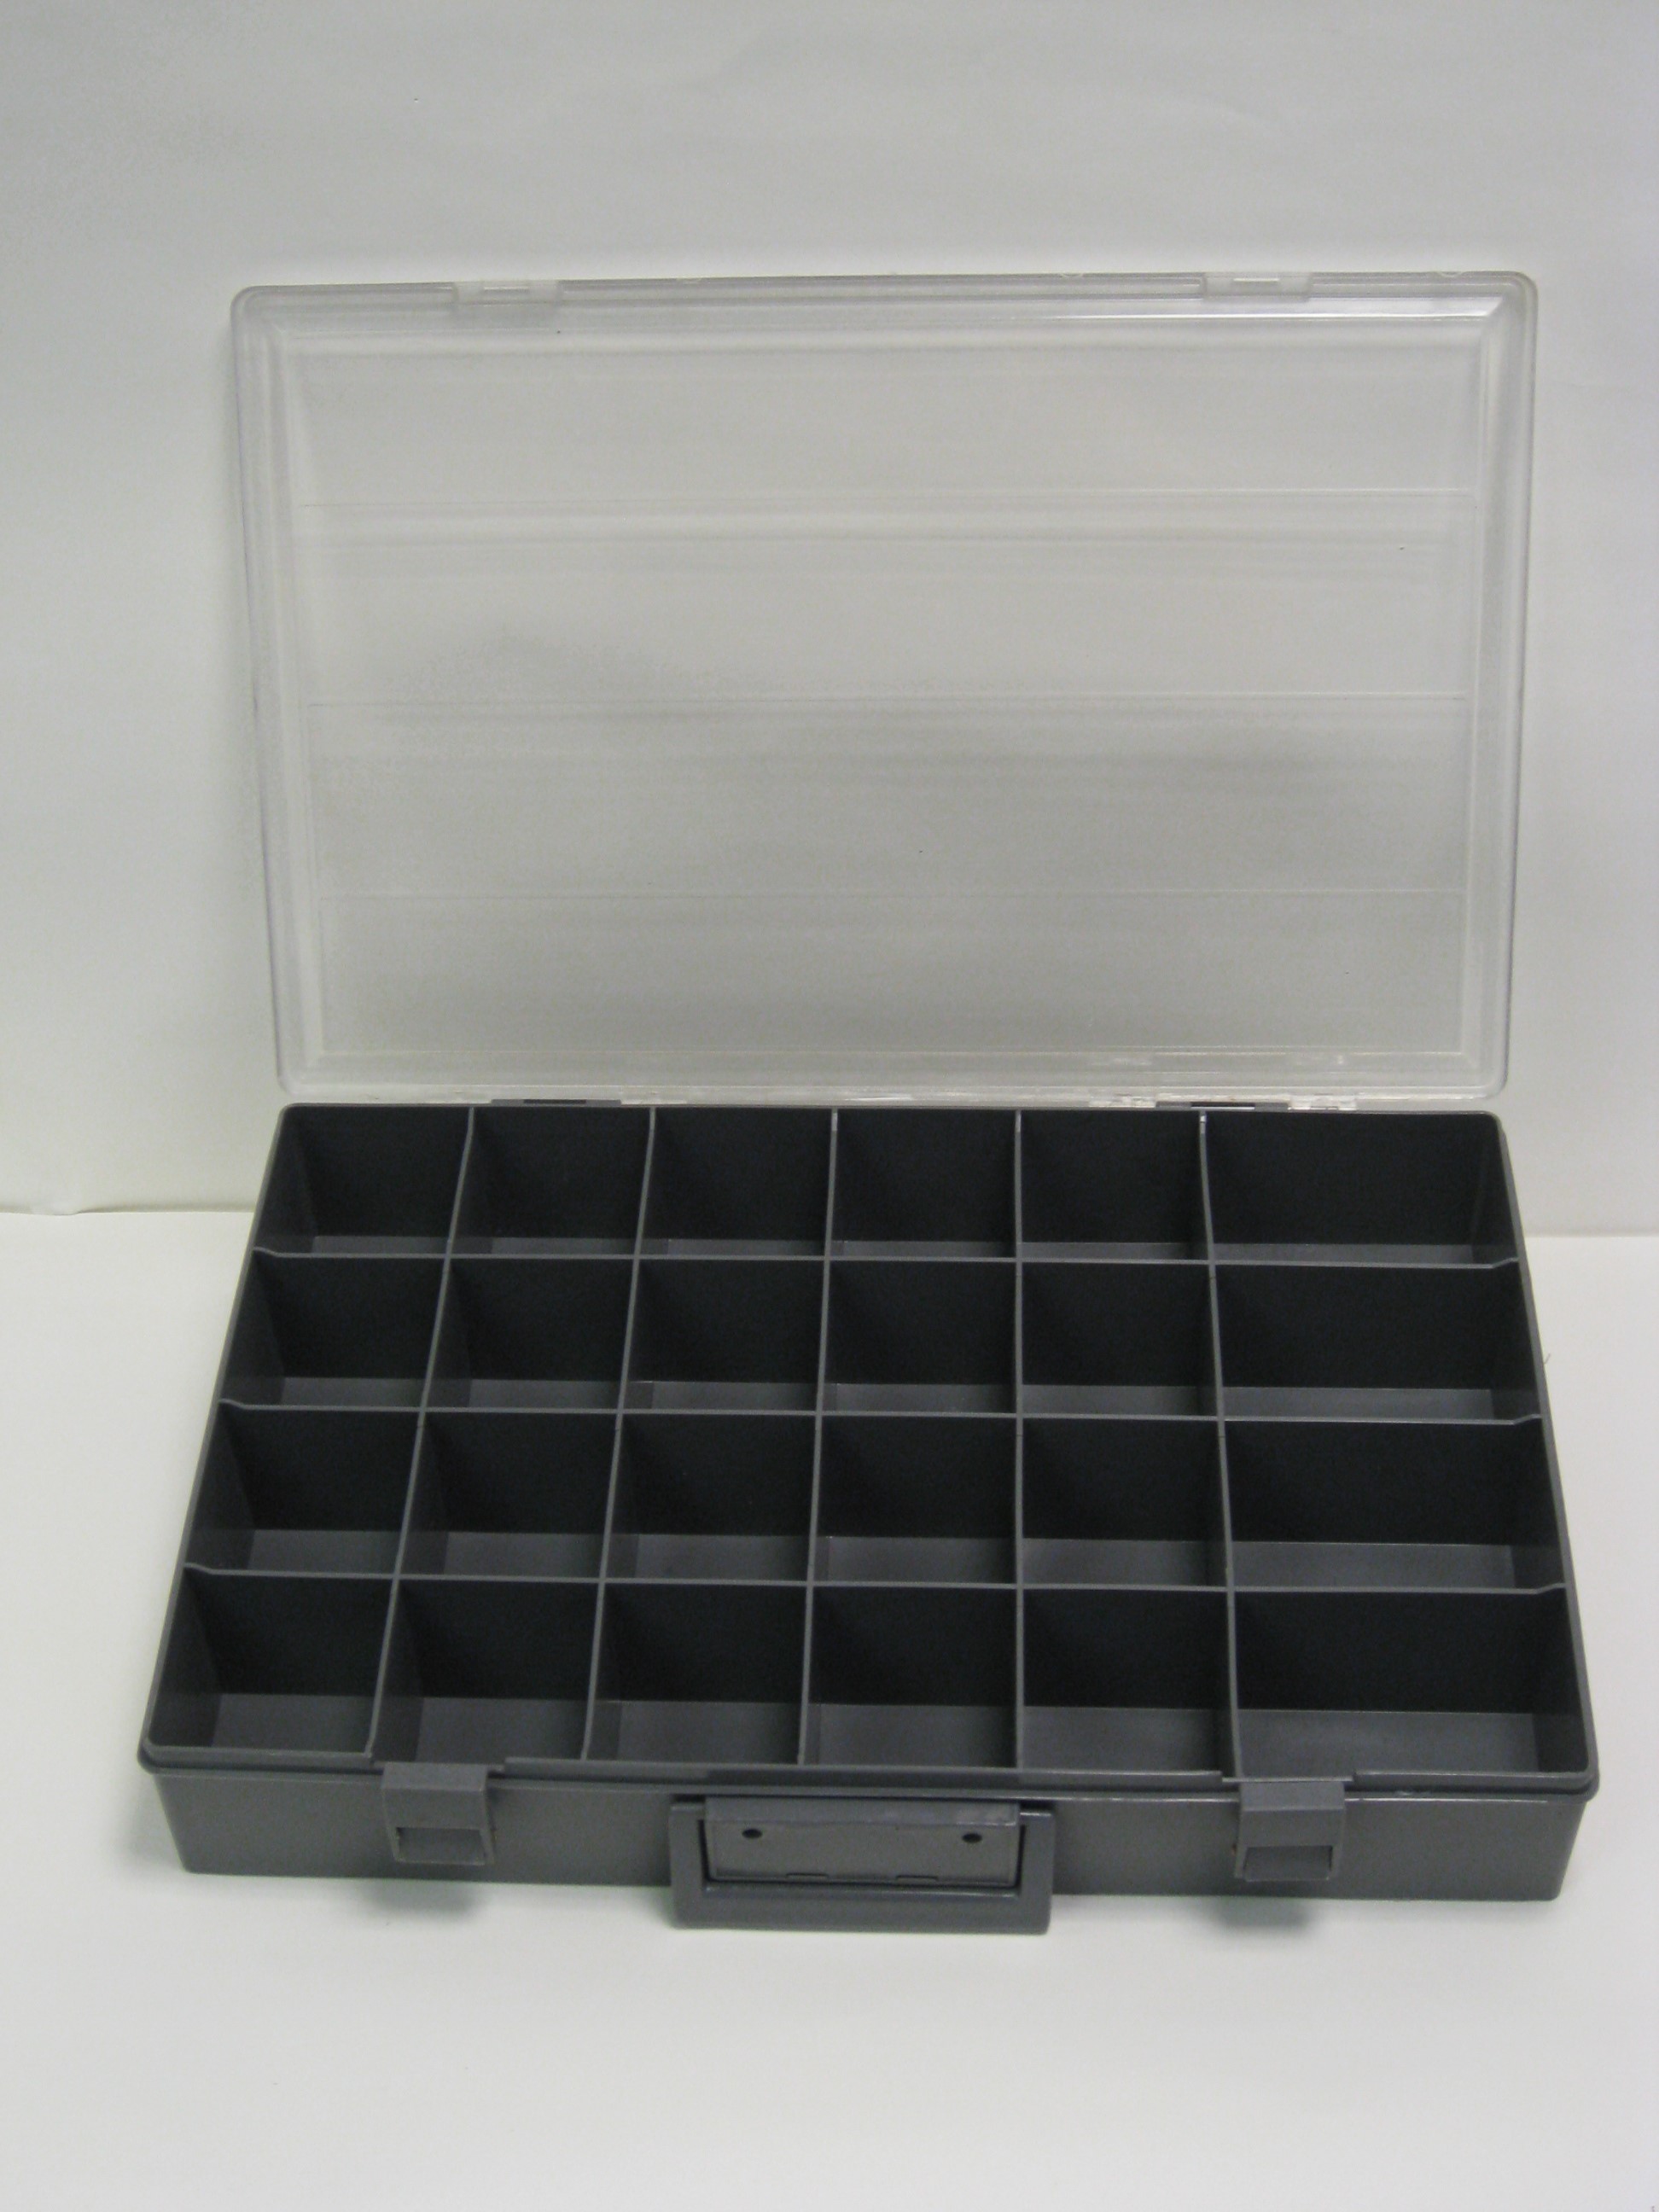 24 Bin Plastic Compartment Box Clear Cover